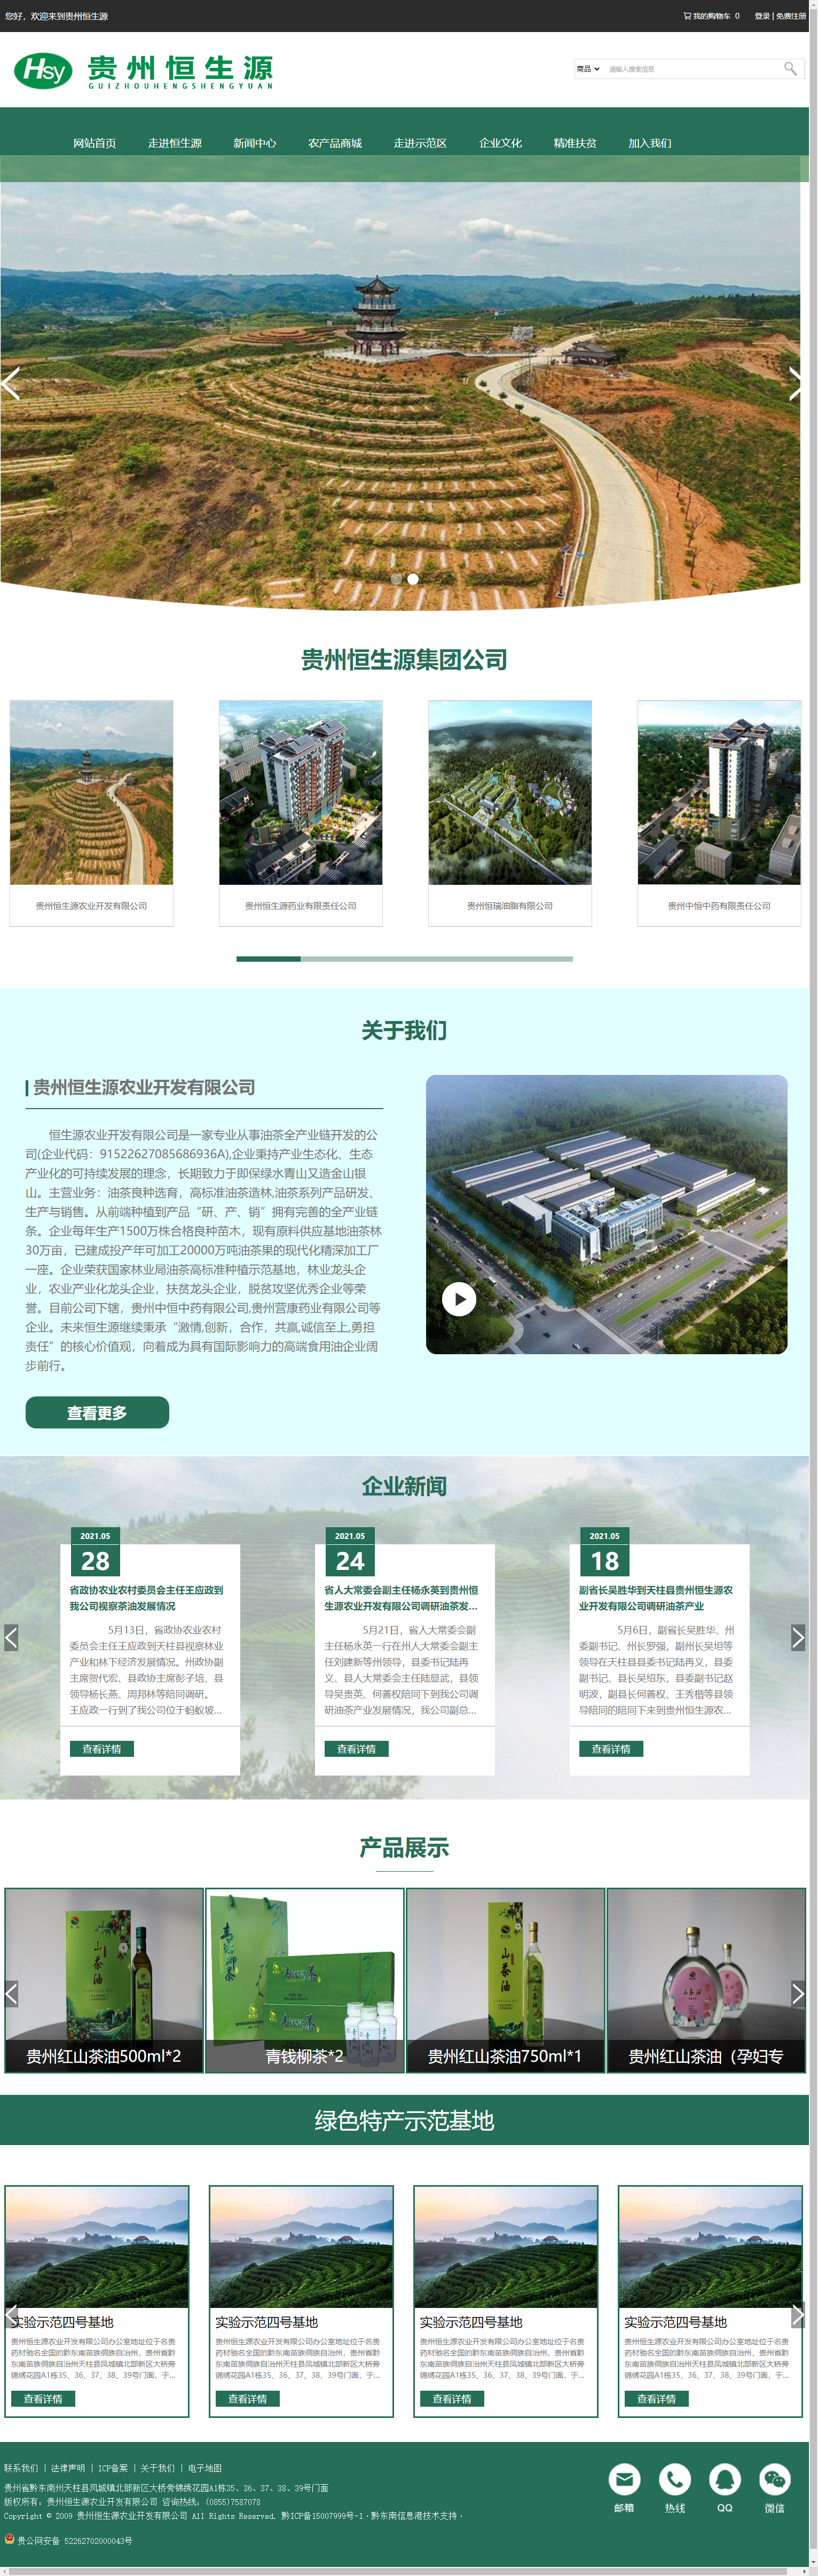 贵州恒生源农业开发有限公司网站案例